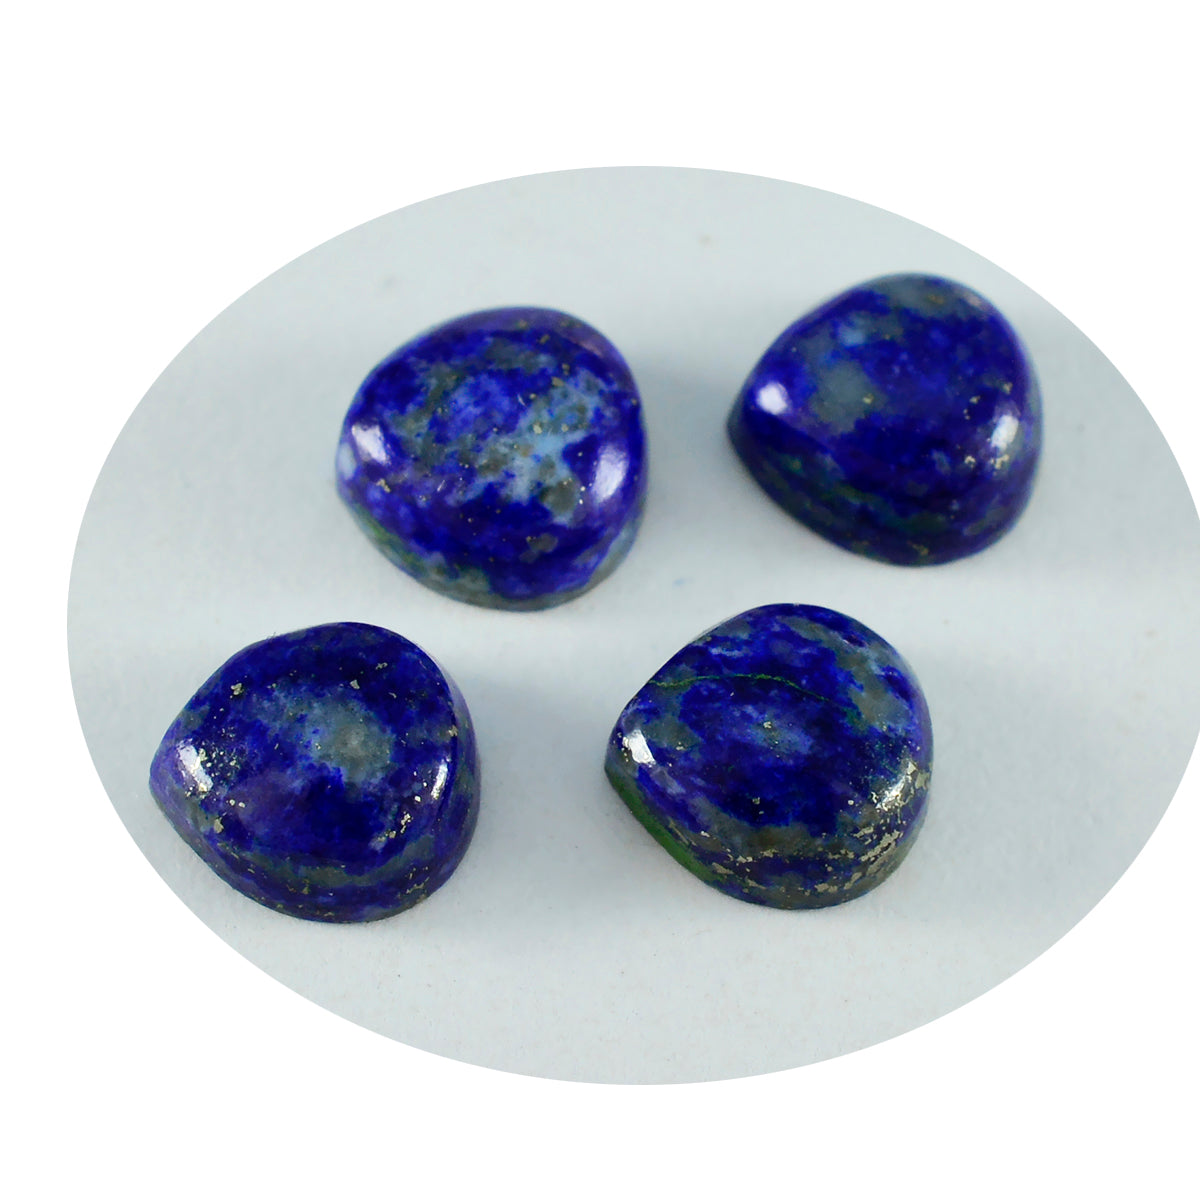 Riyogems 1 pc cabochon lapis lazuli bleu 14x14 mm en forme de coeur jolies pierres précieuses en vrac de qualité